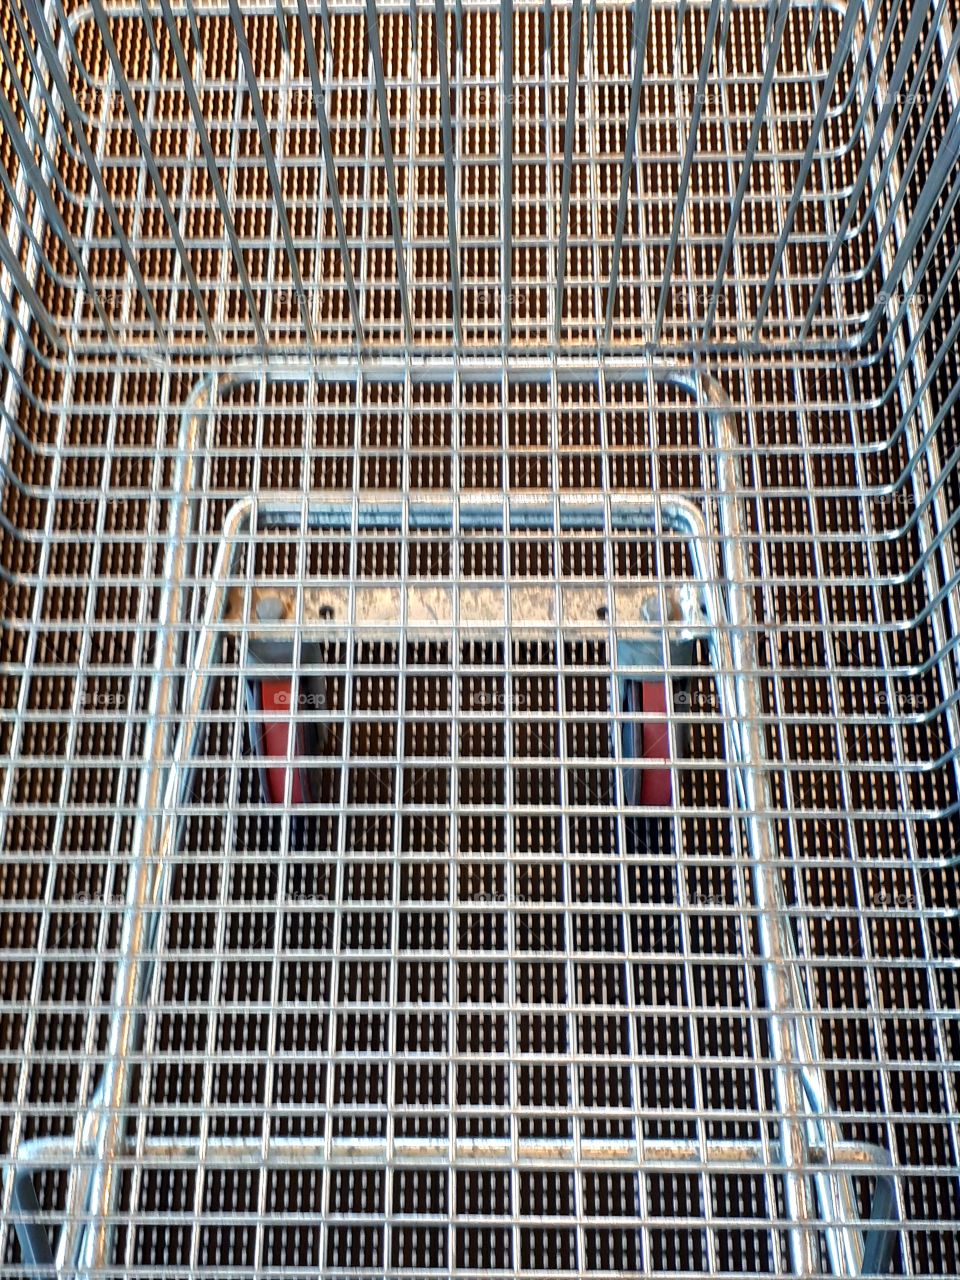 Shopping trolley.